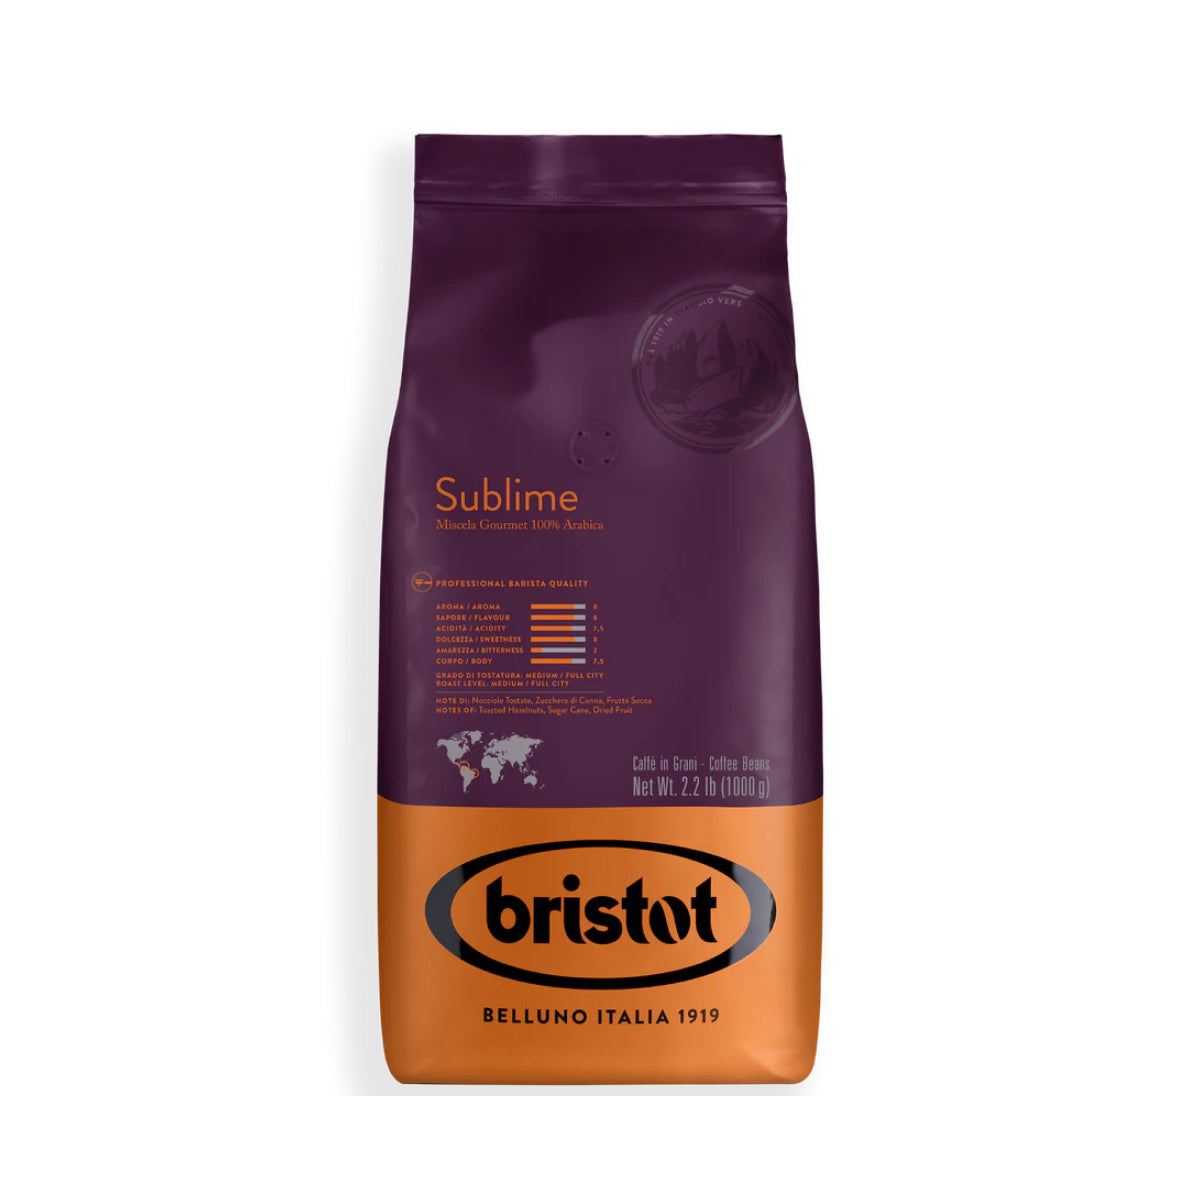 Bristot Sublime Arabica Espresso Beans [2.2 lb]